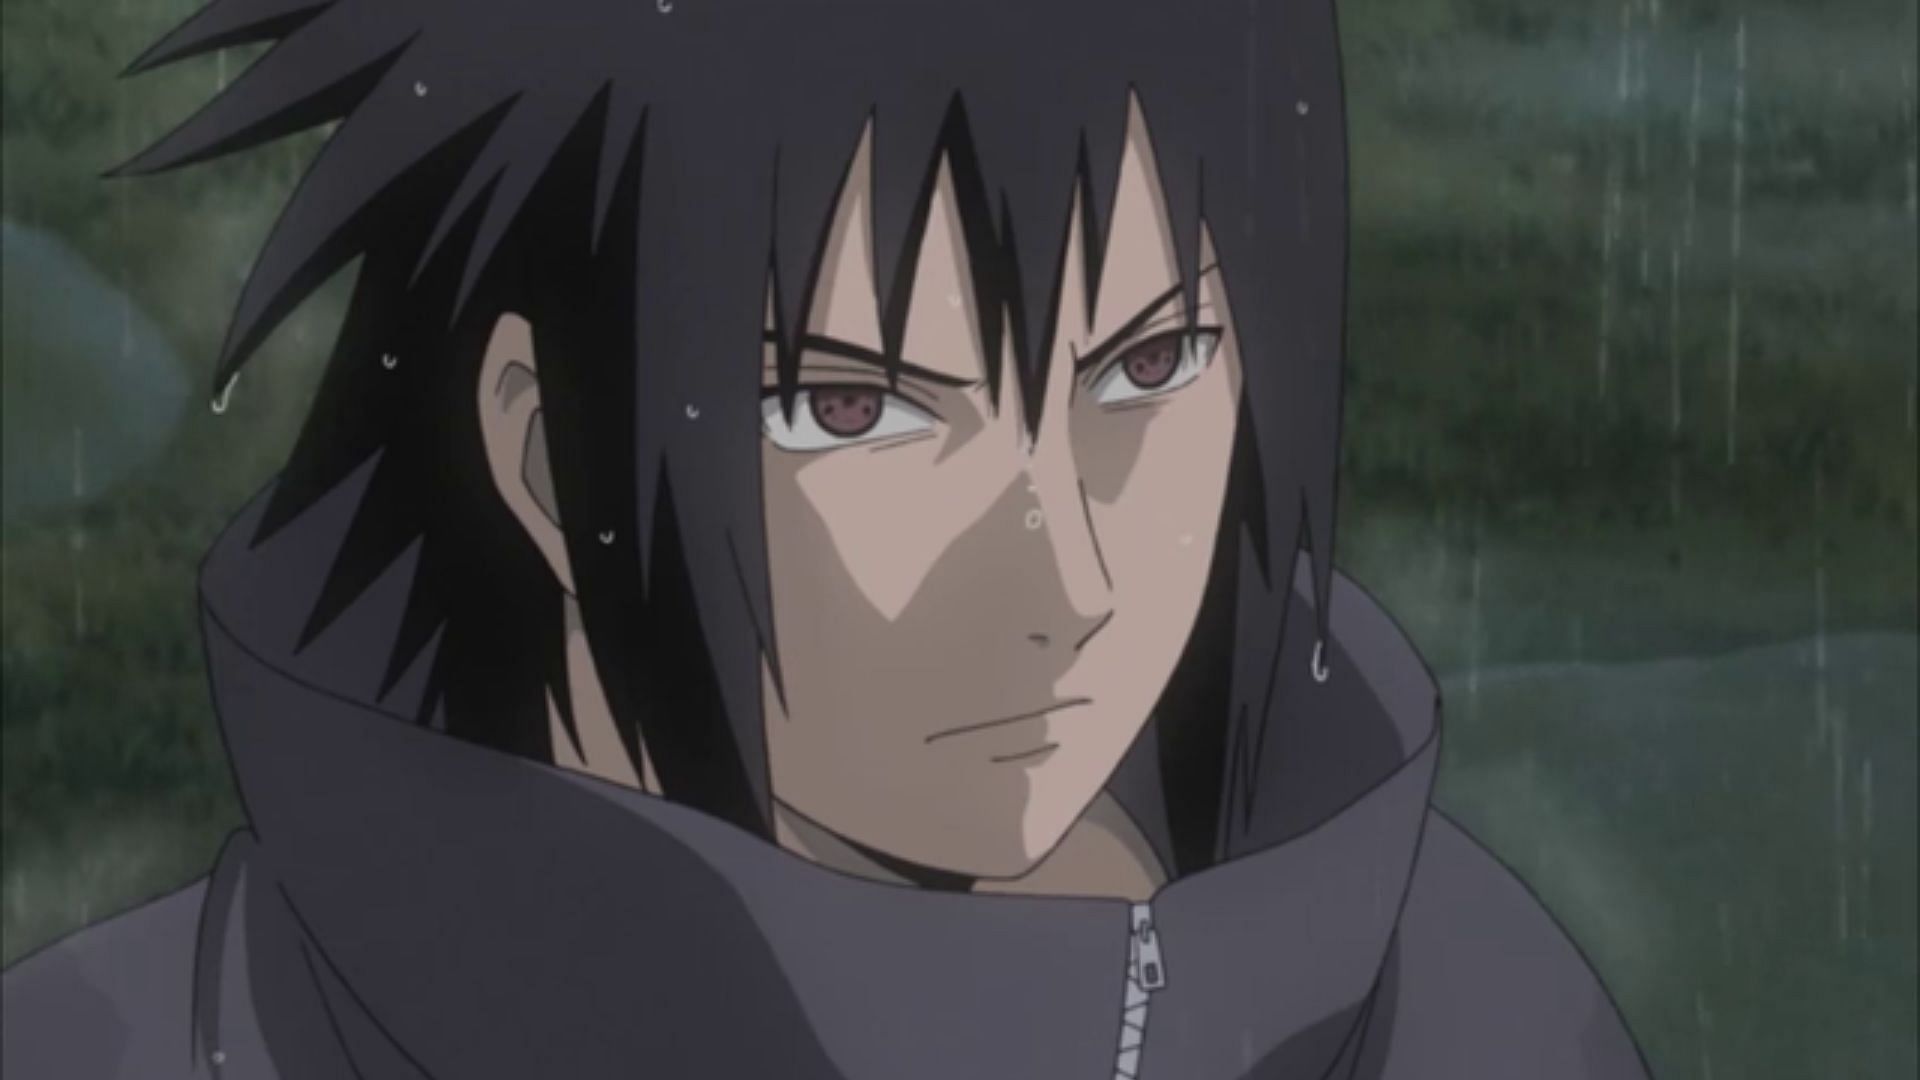 Sasuke Uchiha from Naruto (Image via Studio Pierrot)